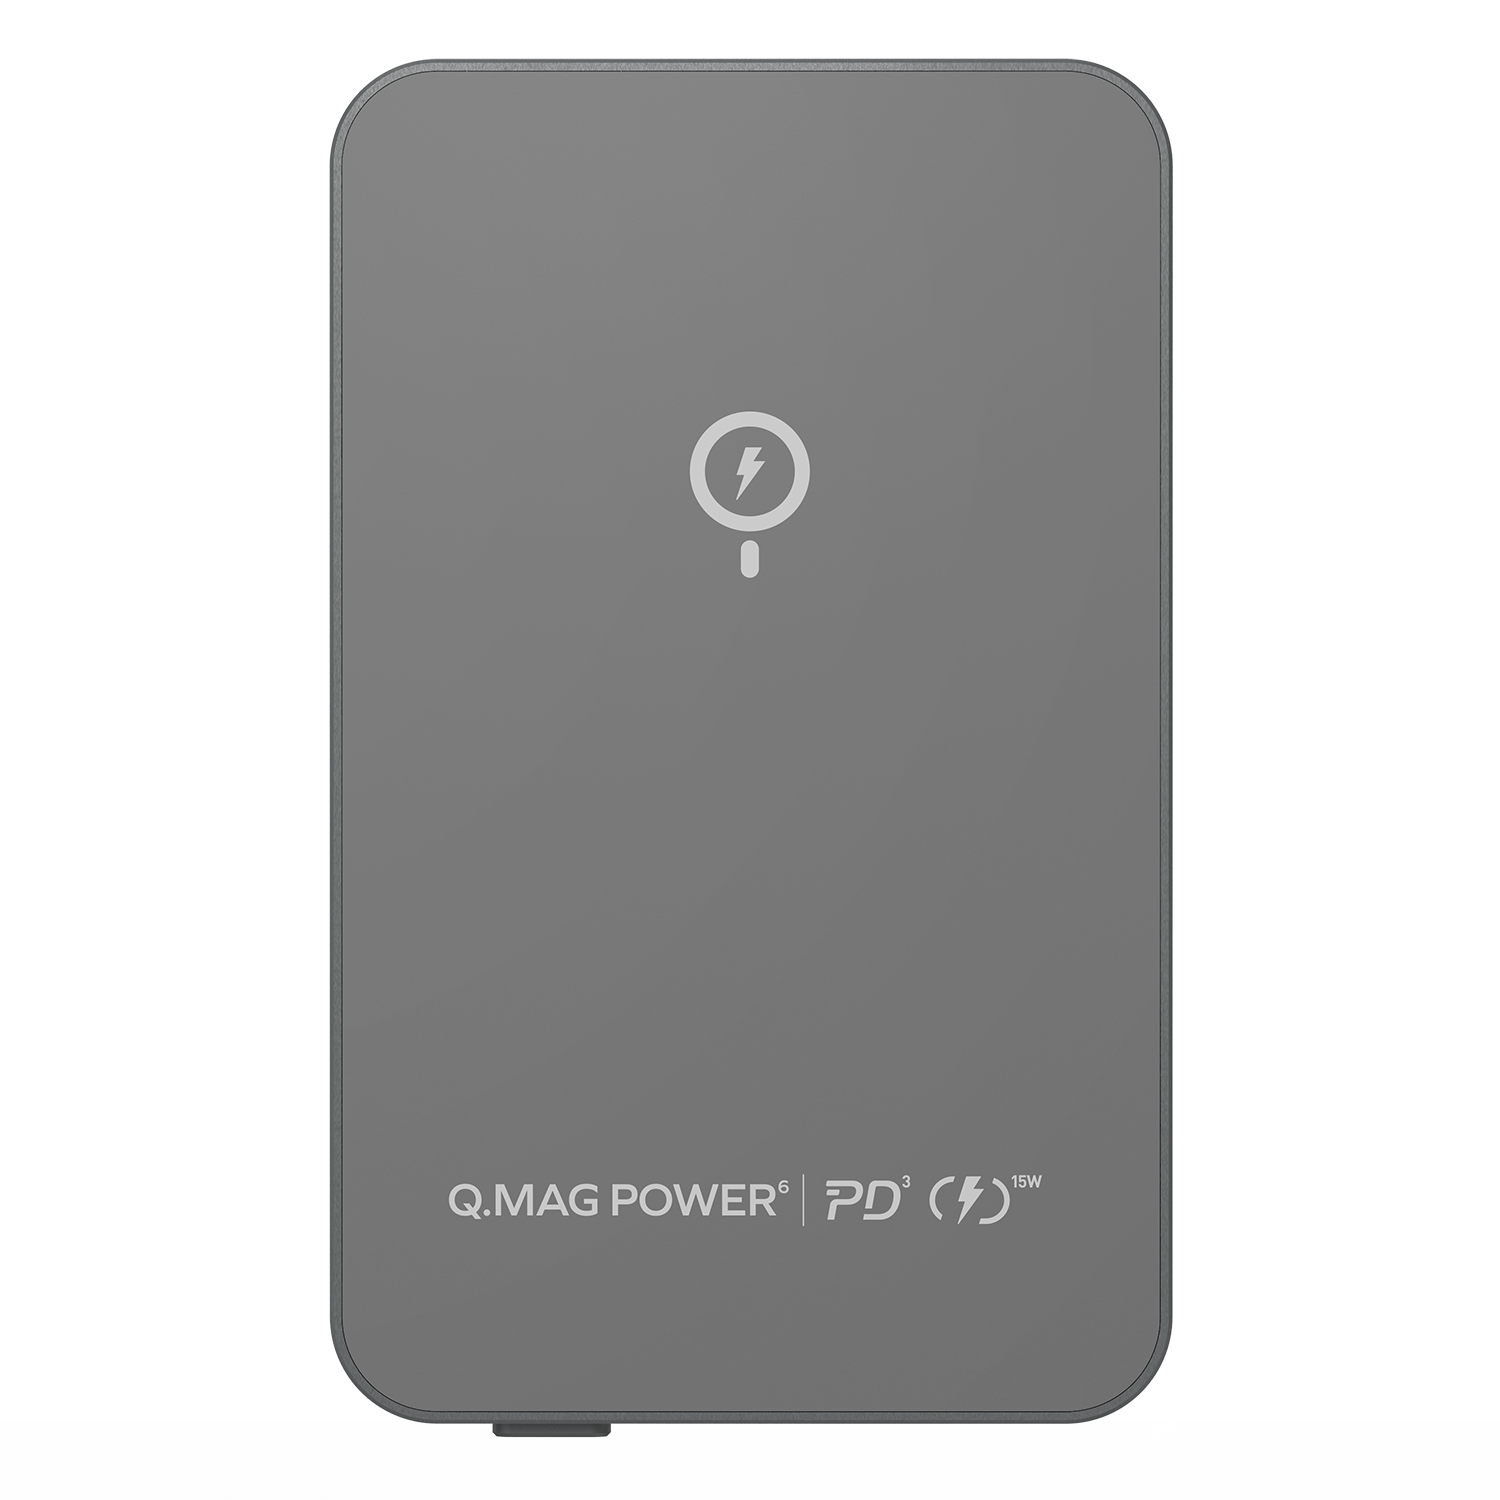 Momax Q.MAG Power 6 Wireless MagSafe Power Bank 5000mAh